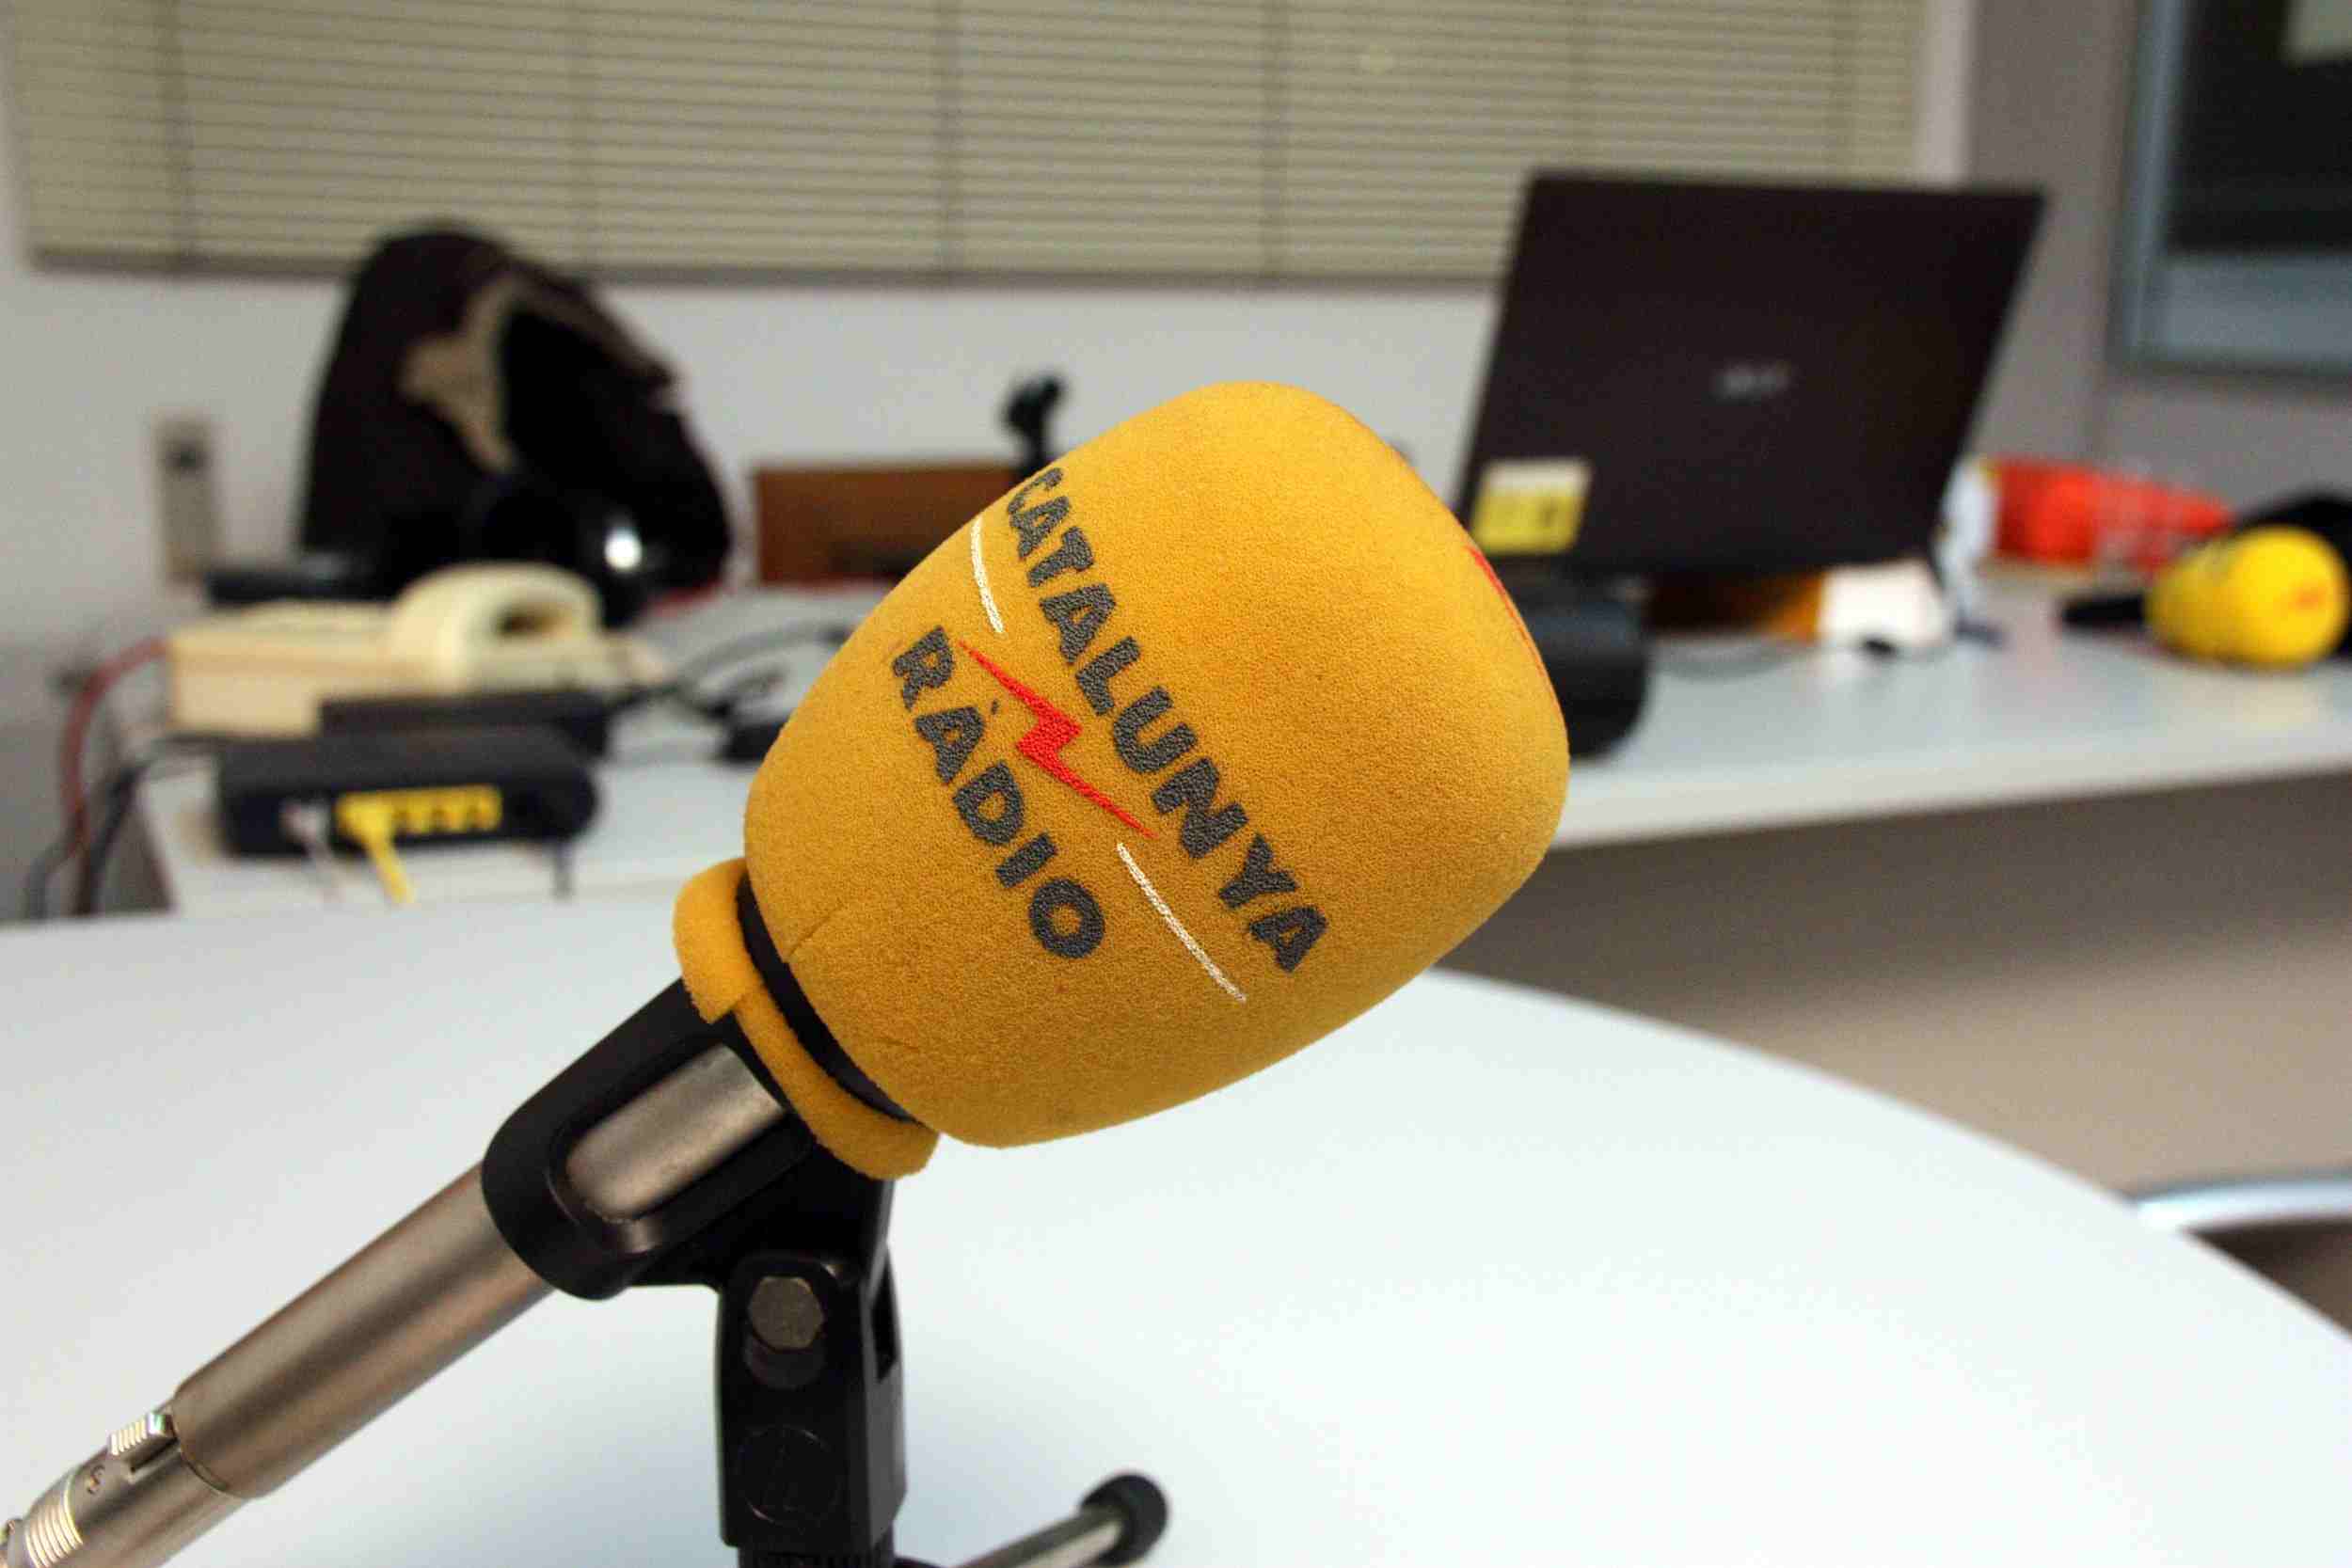 La Junta Electoral ordena abrir expediente sancionador contra Catalunya Ràdio